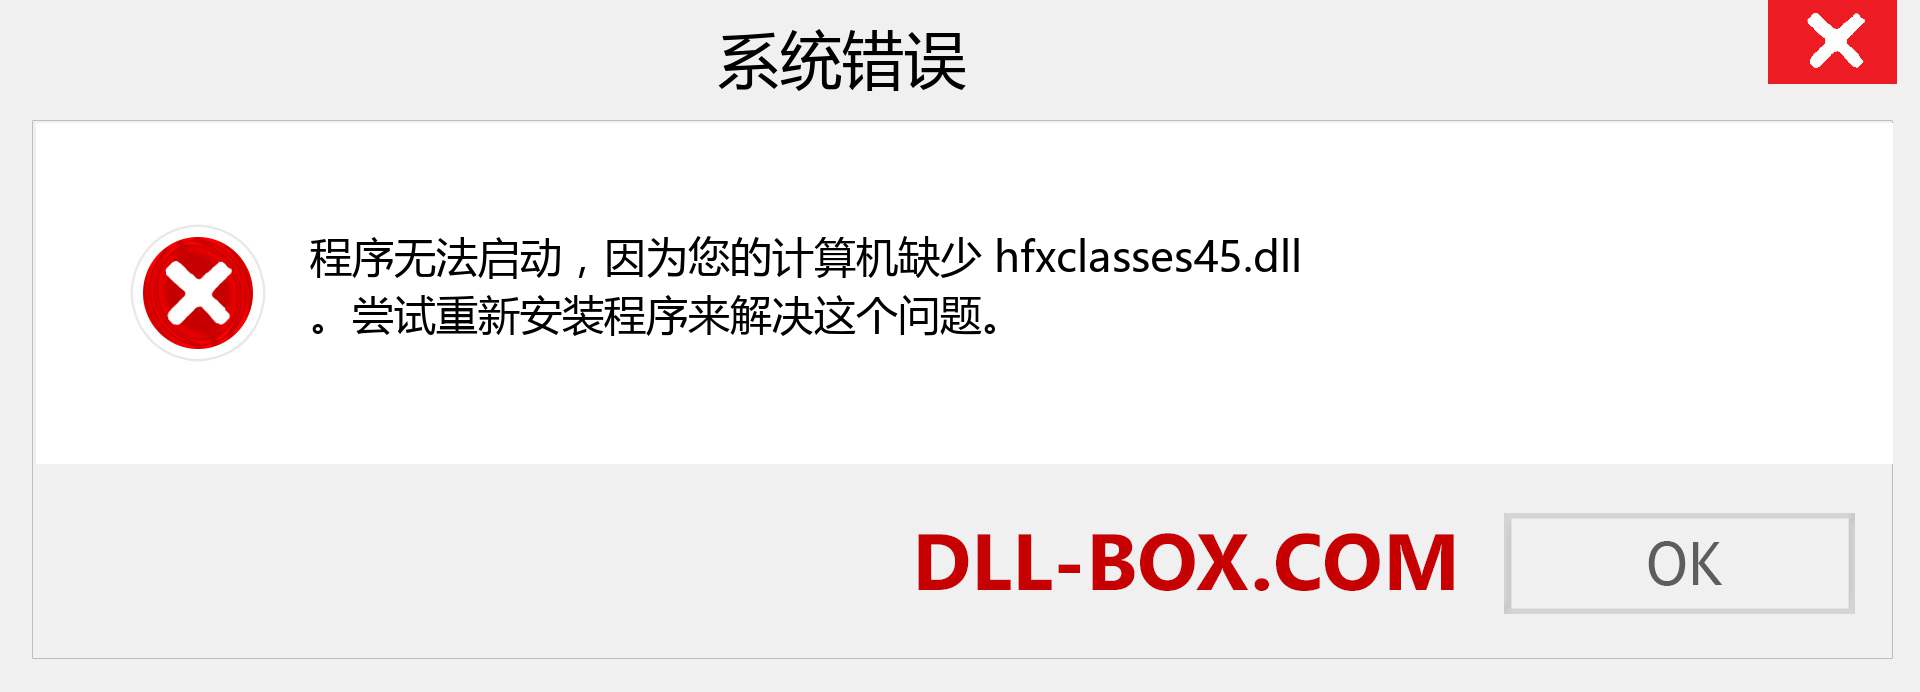 hfxclasses45.dll 文件丢失？。 适用于 Windows 7、8、10 的下载 - 修复 Windows、照片、图像上的 hfxclasses45 dll 丢失错误